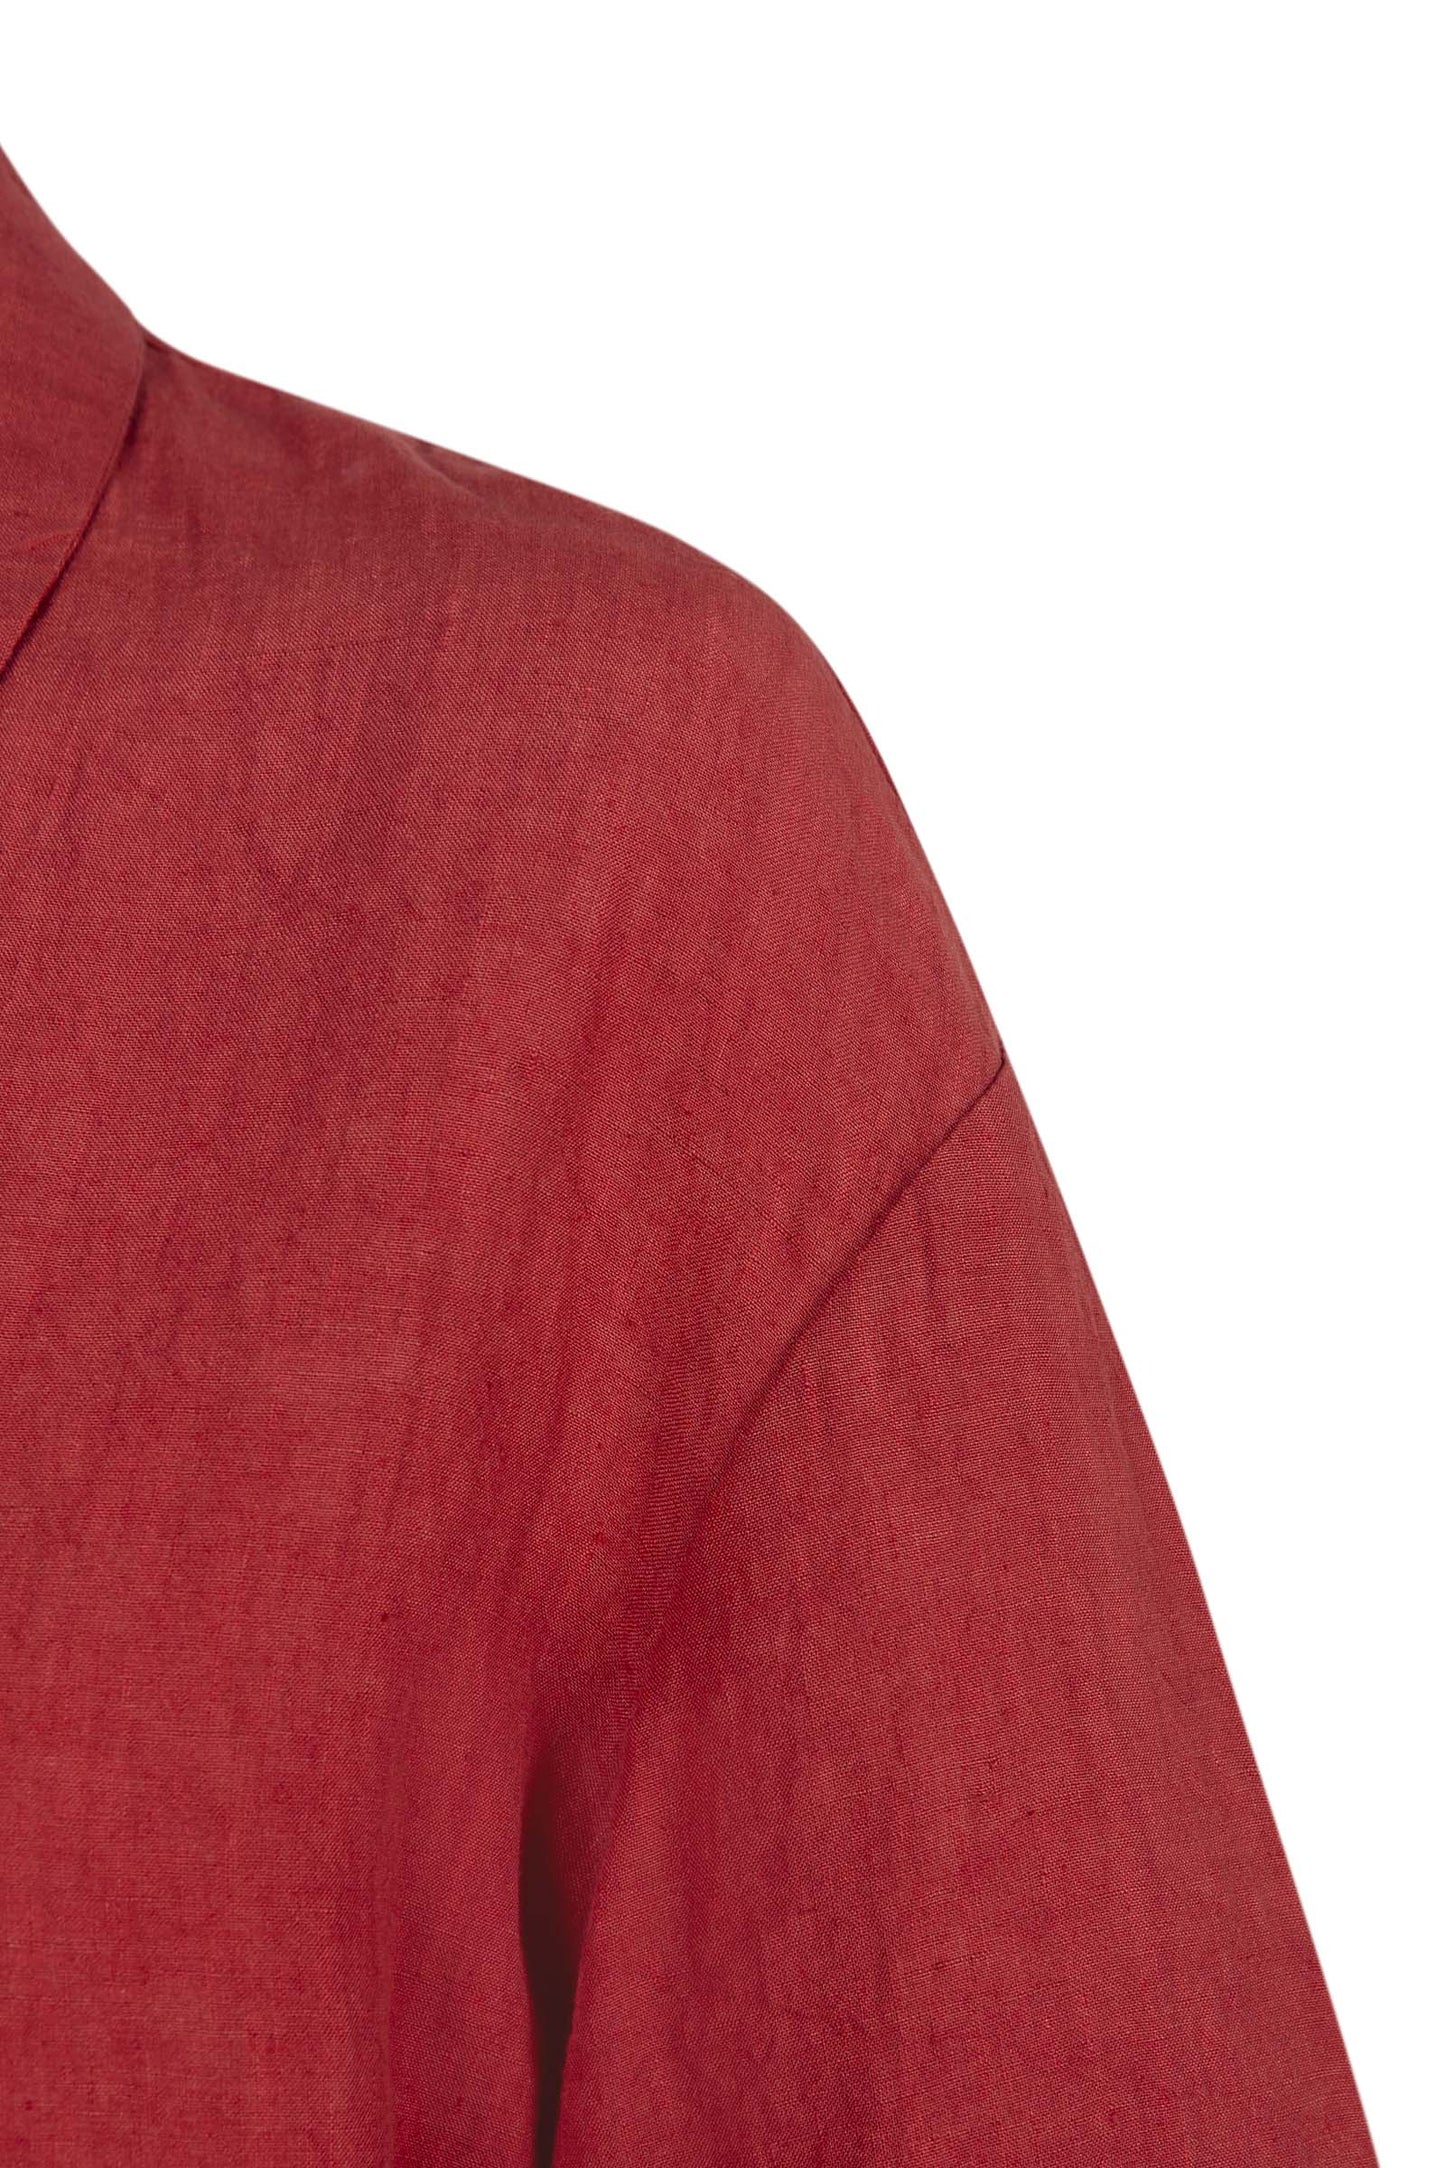 Marlo, camisa en lino rojo